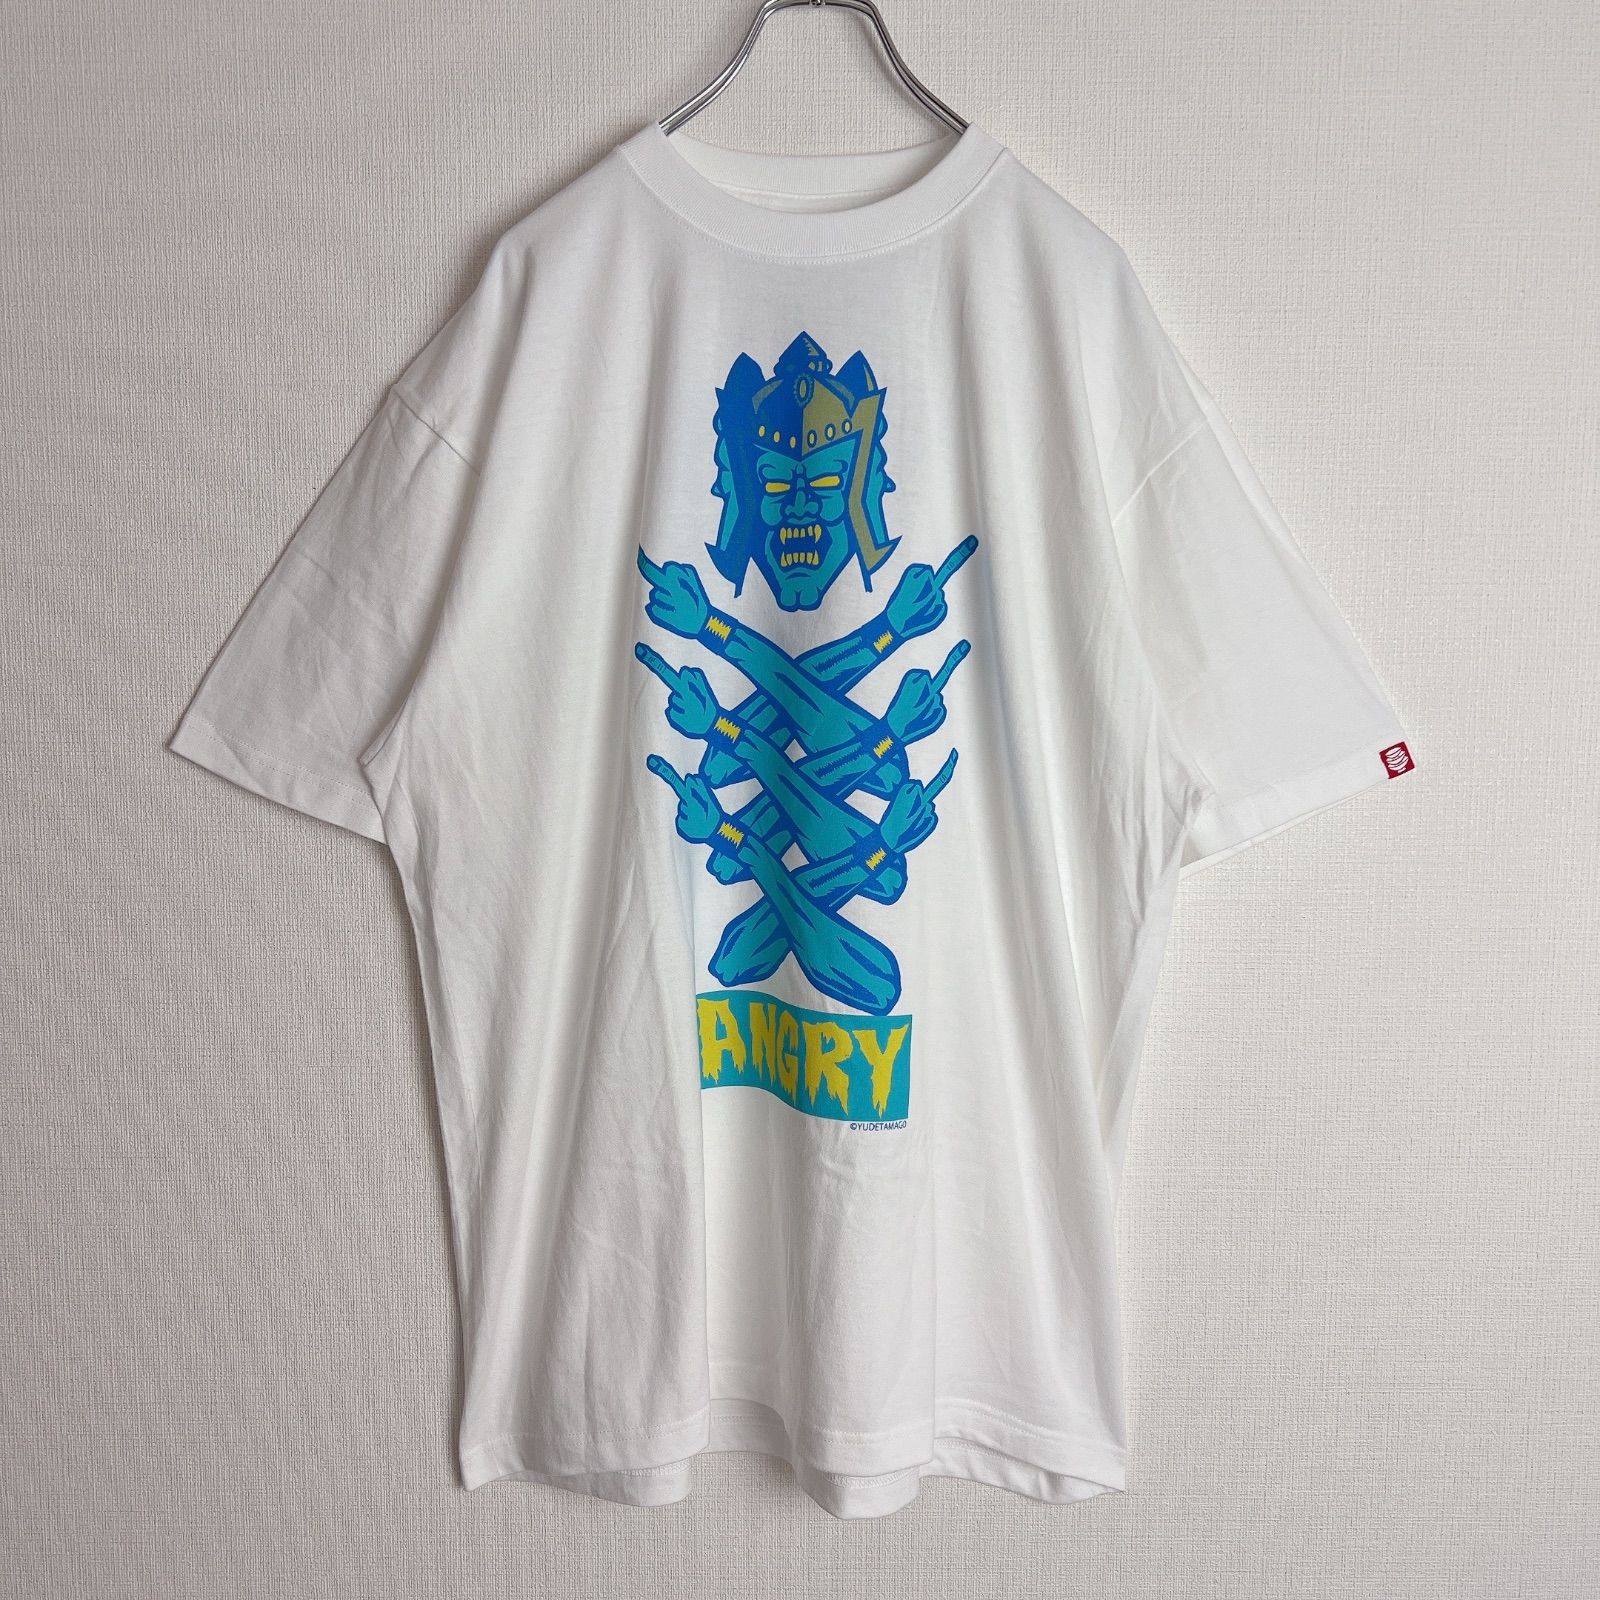 【レア‼️新品未使用】アシュラマン パンクドランカーズ Tシャツ Mサイズ